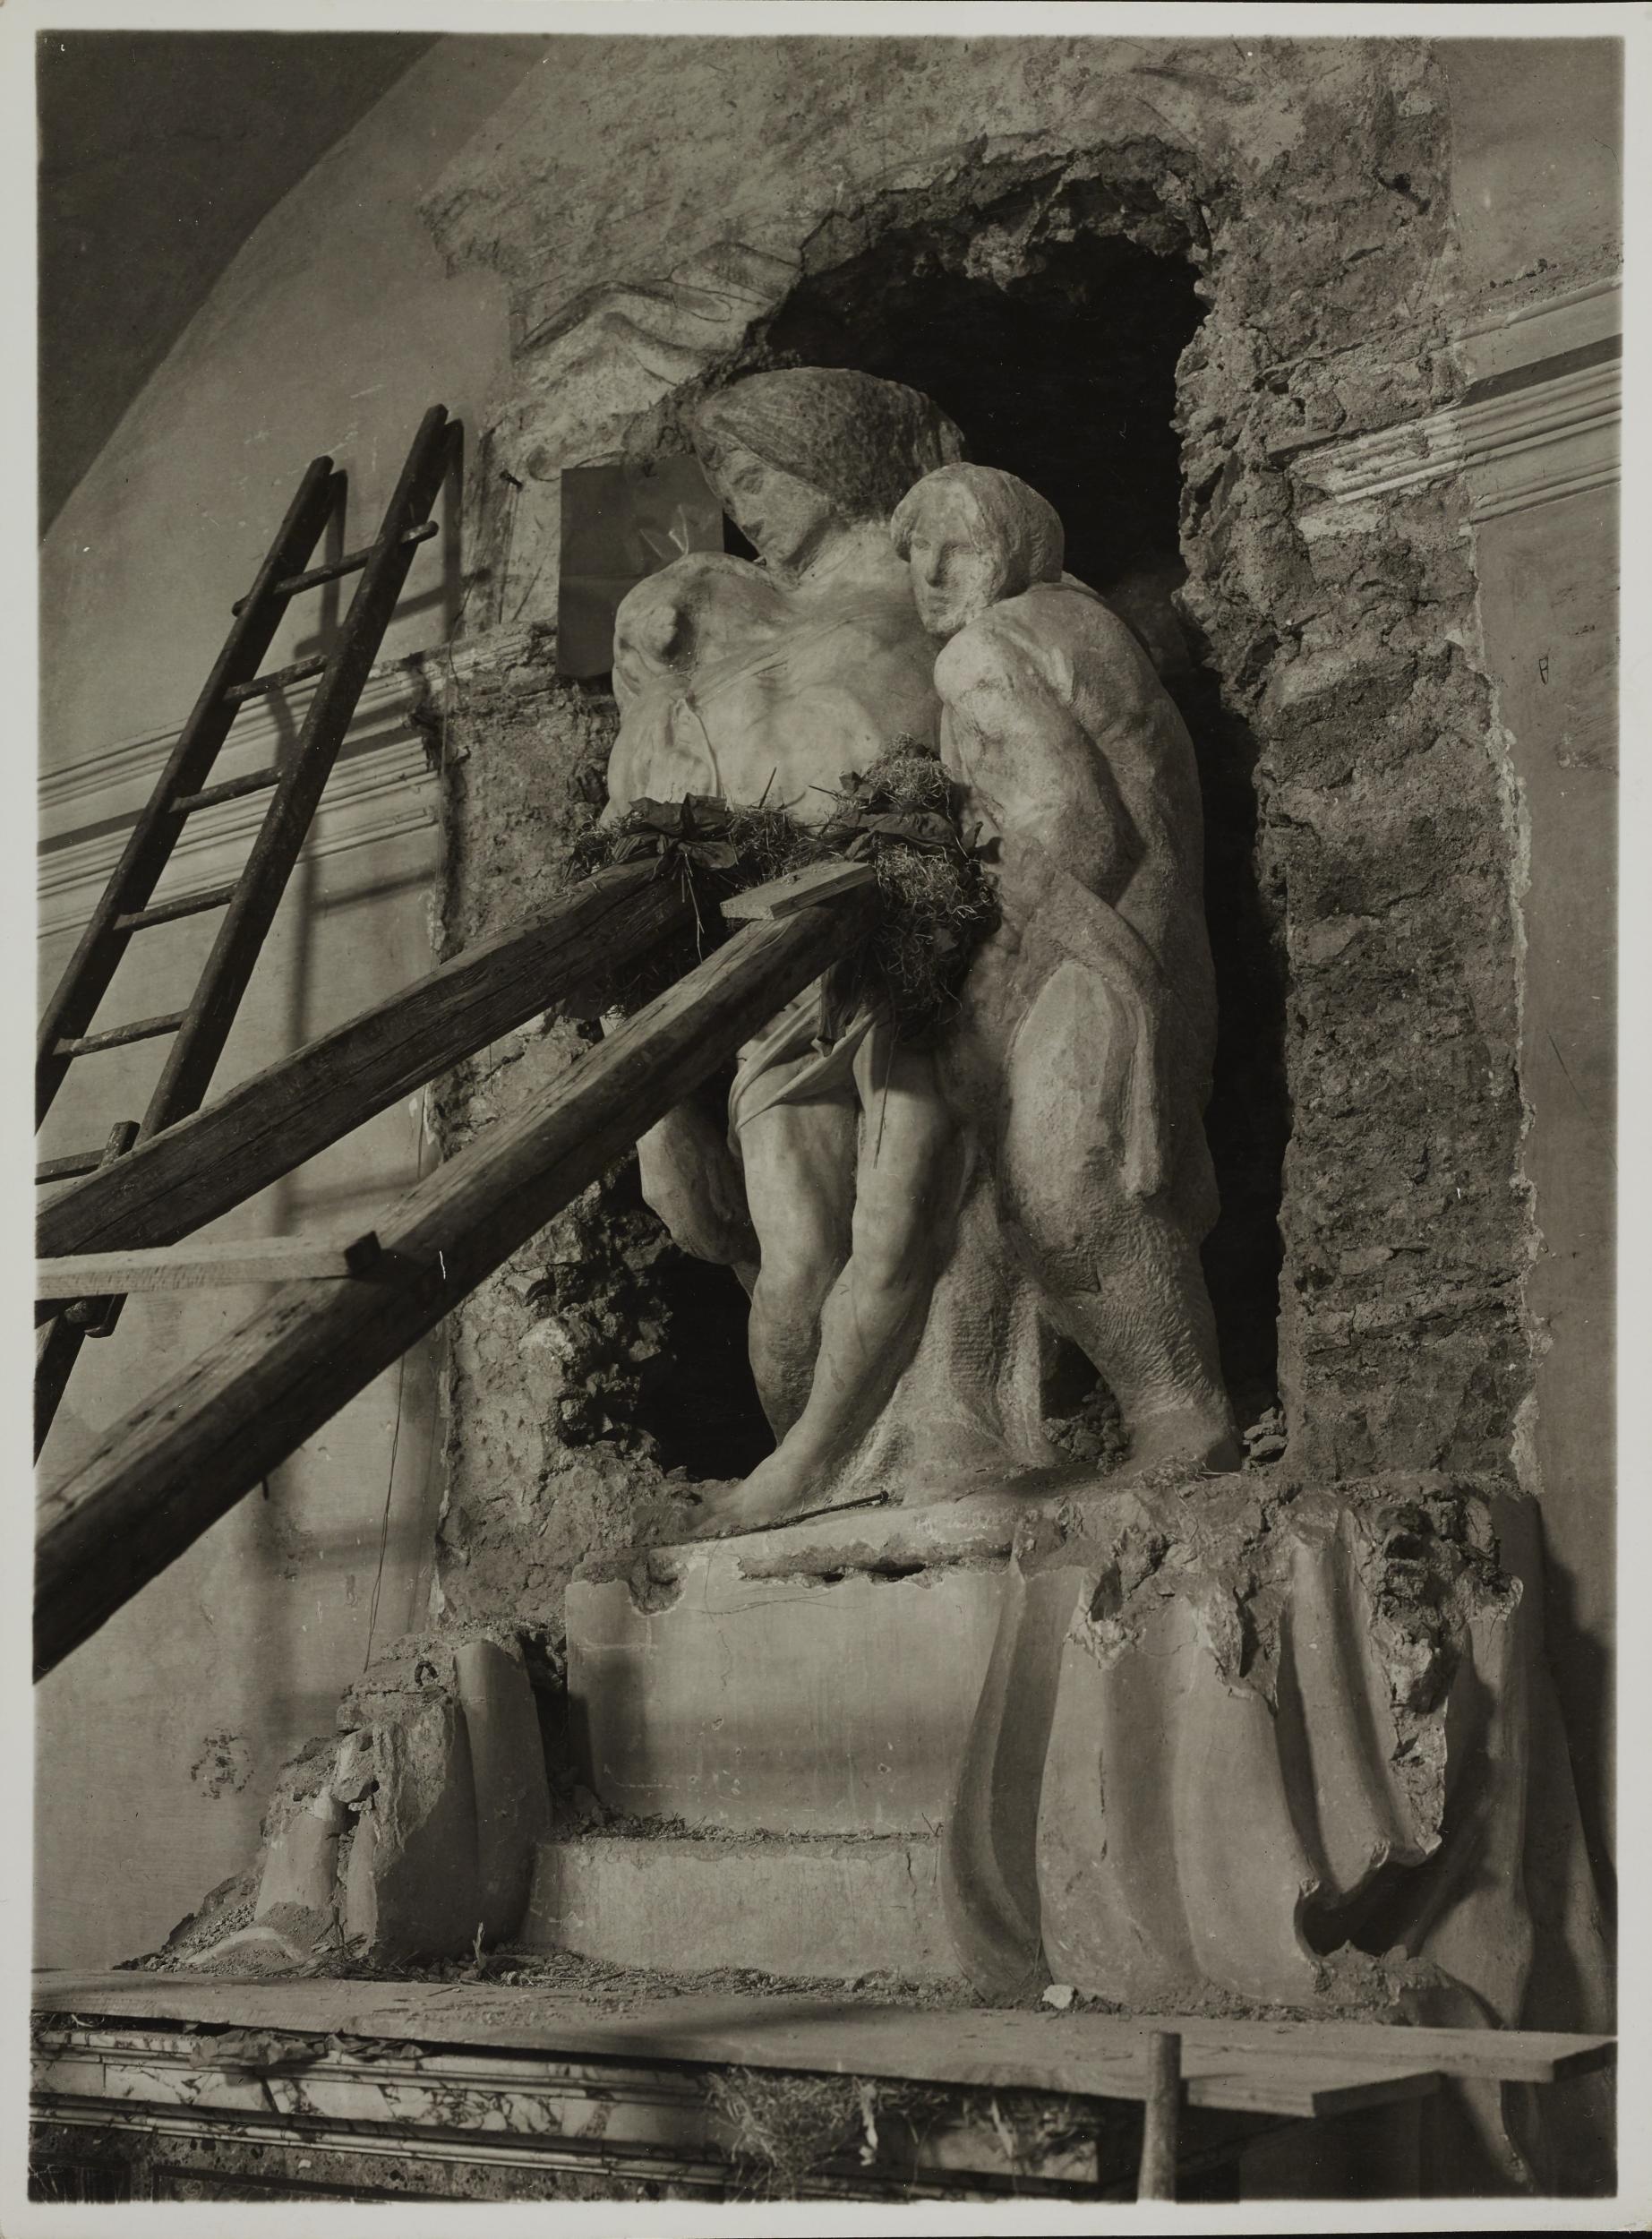 Fotografo non identificato, Chiesa di S. Rosalia, Cappella funeraria Barberini, Pietà di Palestrina, oggi nella Galleria dell'Accademia di Firenze, trasporto, 1939-1940, gelatina ai sali d'argento, MPI6099507